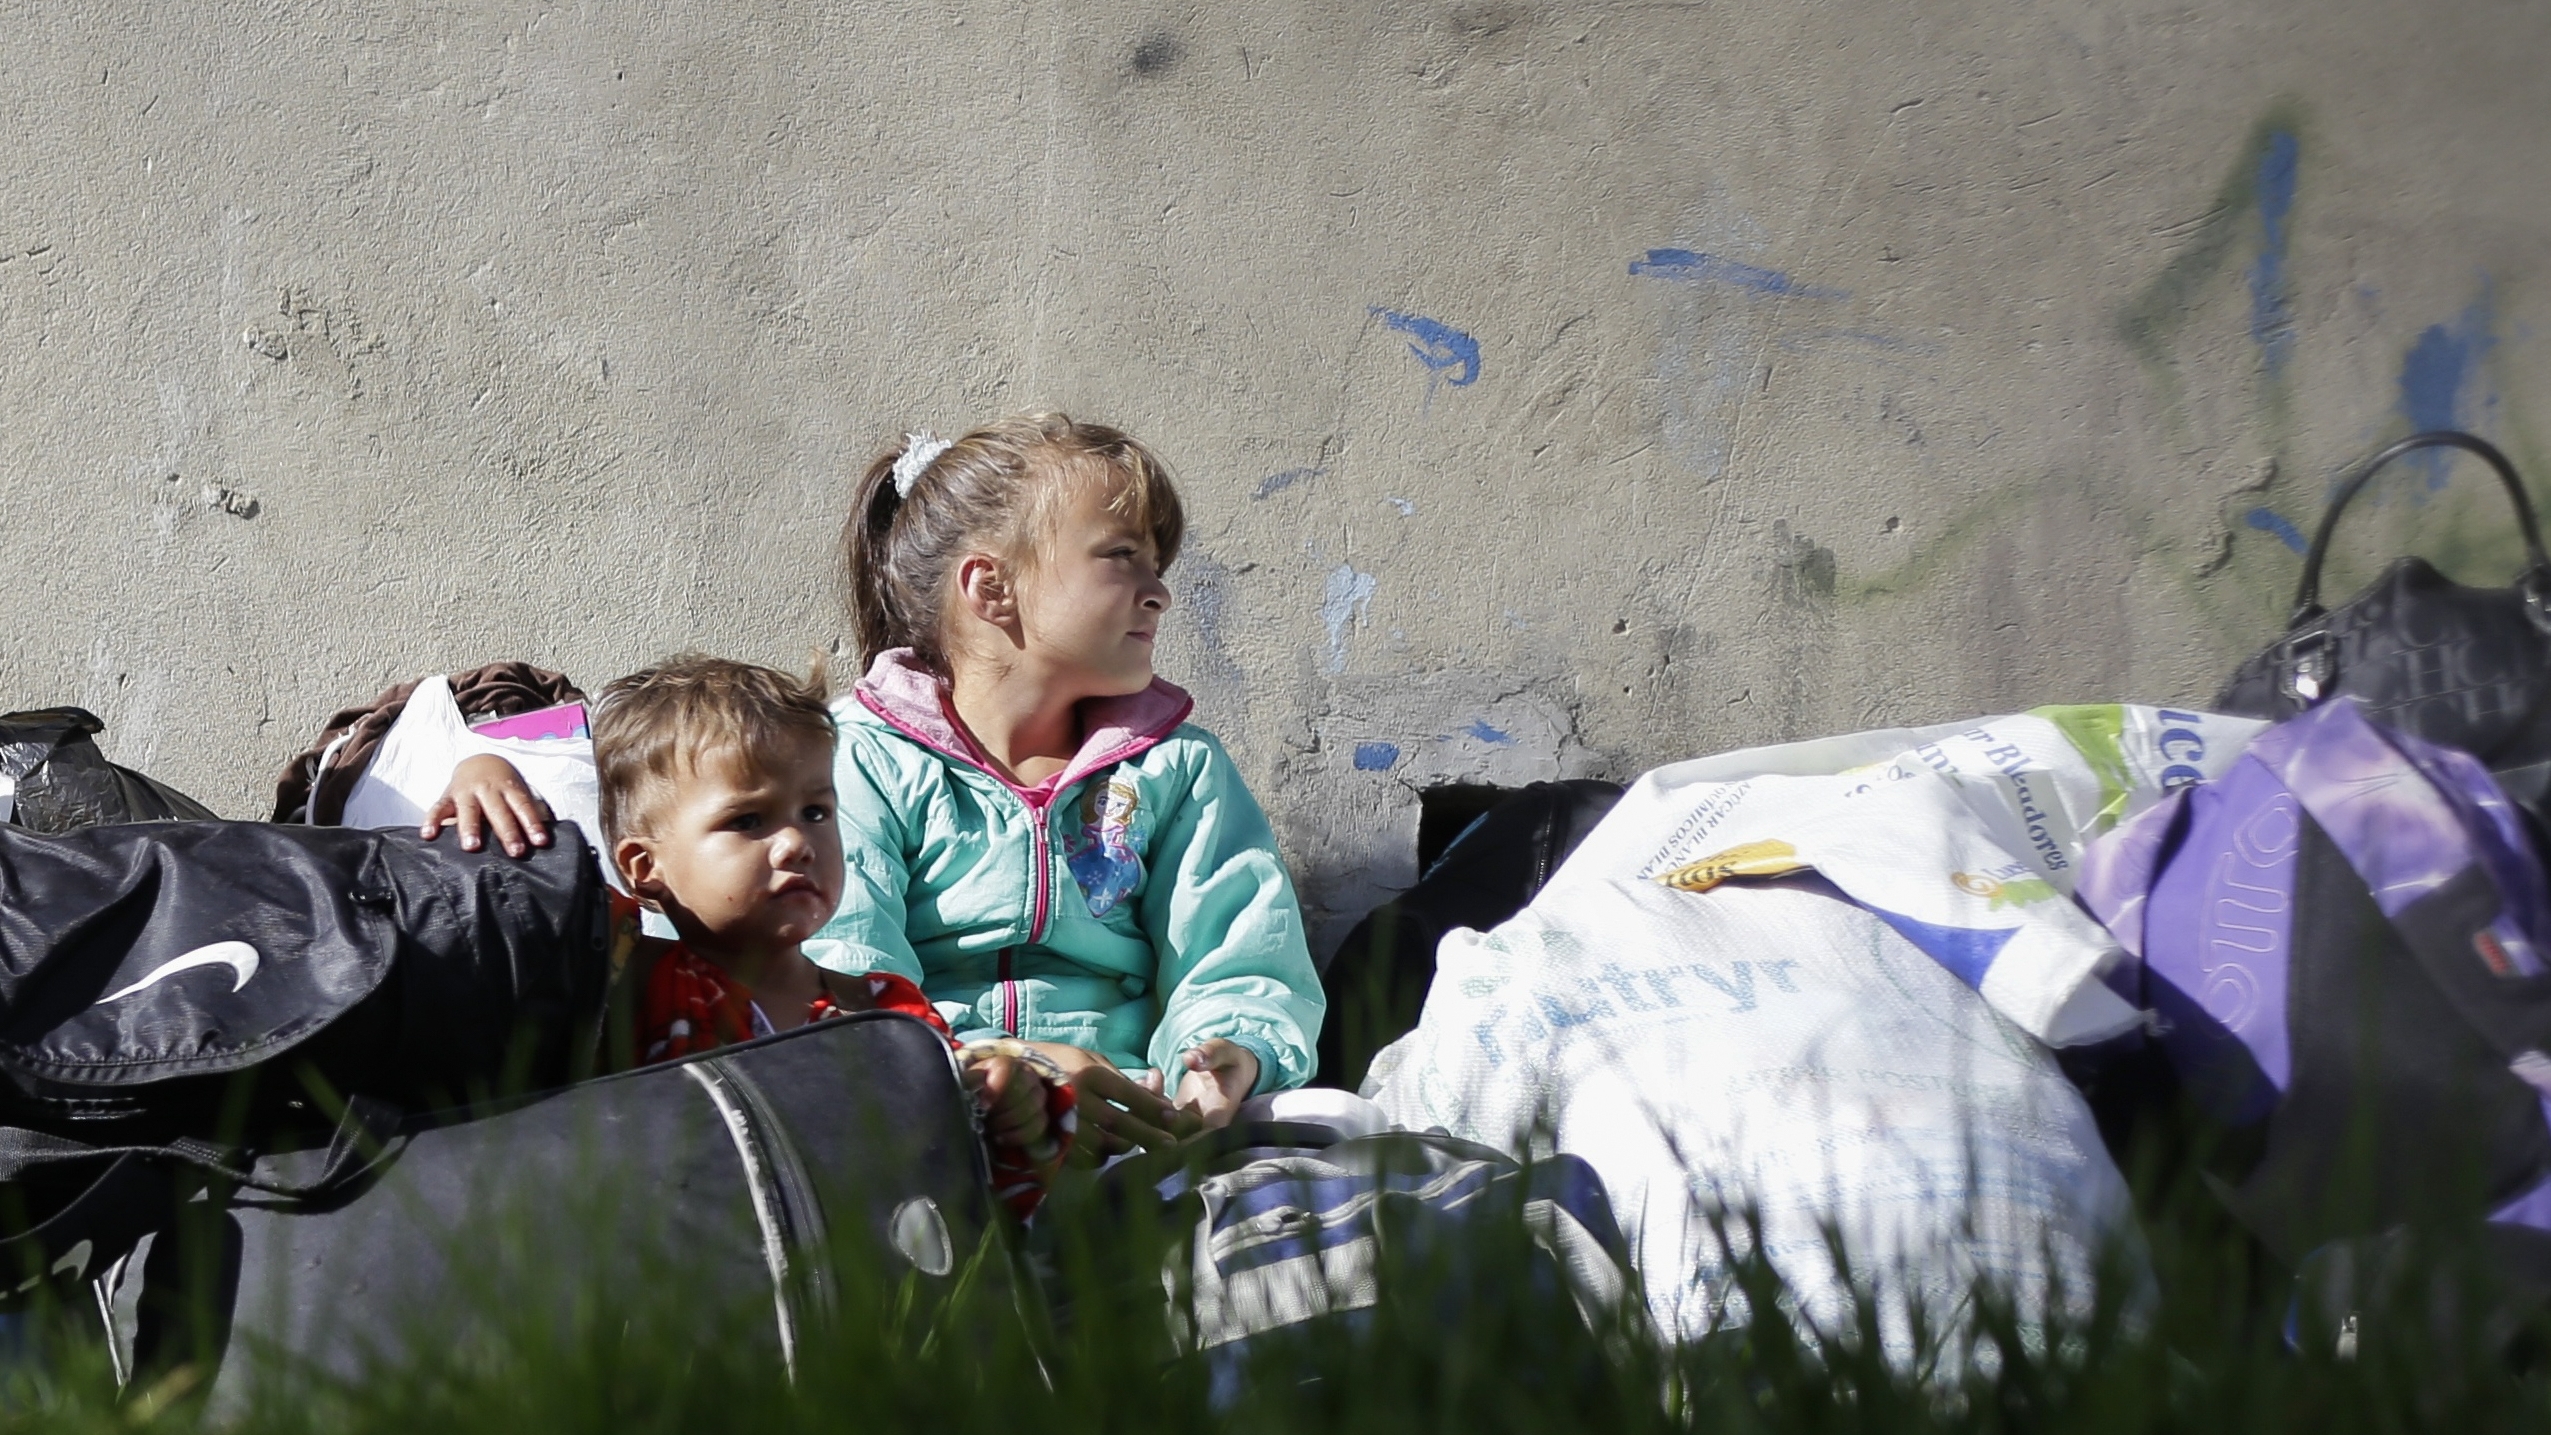 Dos niños venezolanos esperan sobre unas maletas en uno de los campamentos dispuestos para refugiados venezolanos en Bogotá (Colprensa - Sergio Acero)